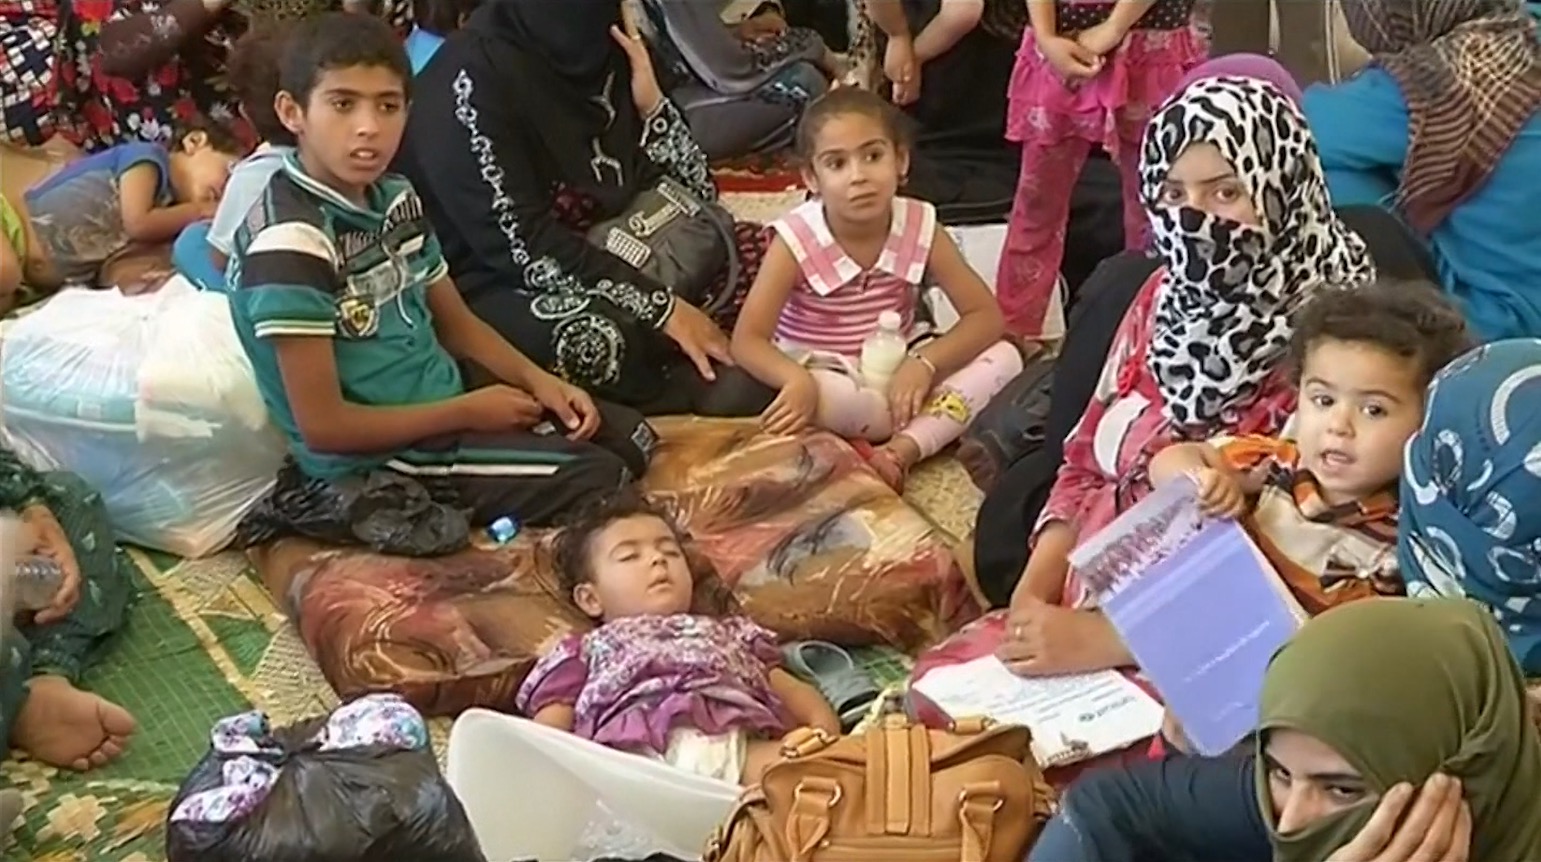 المدنيون عالقون وسط القتال في الفلوجة و”داعش” يستخدمهم دروعا بشرية - CNNArabic.com